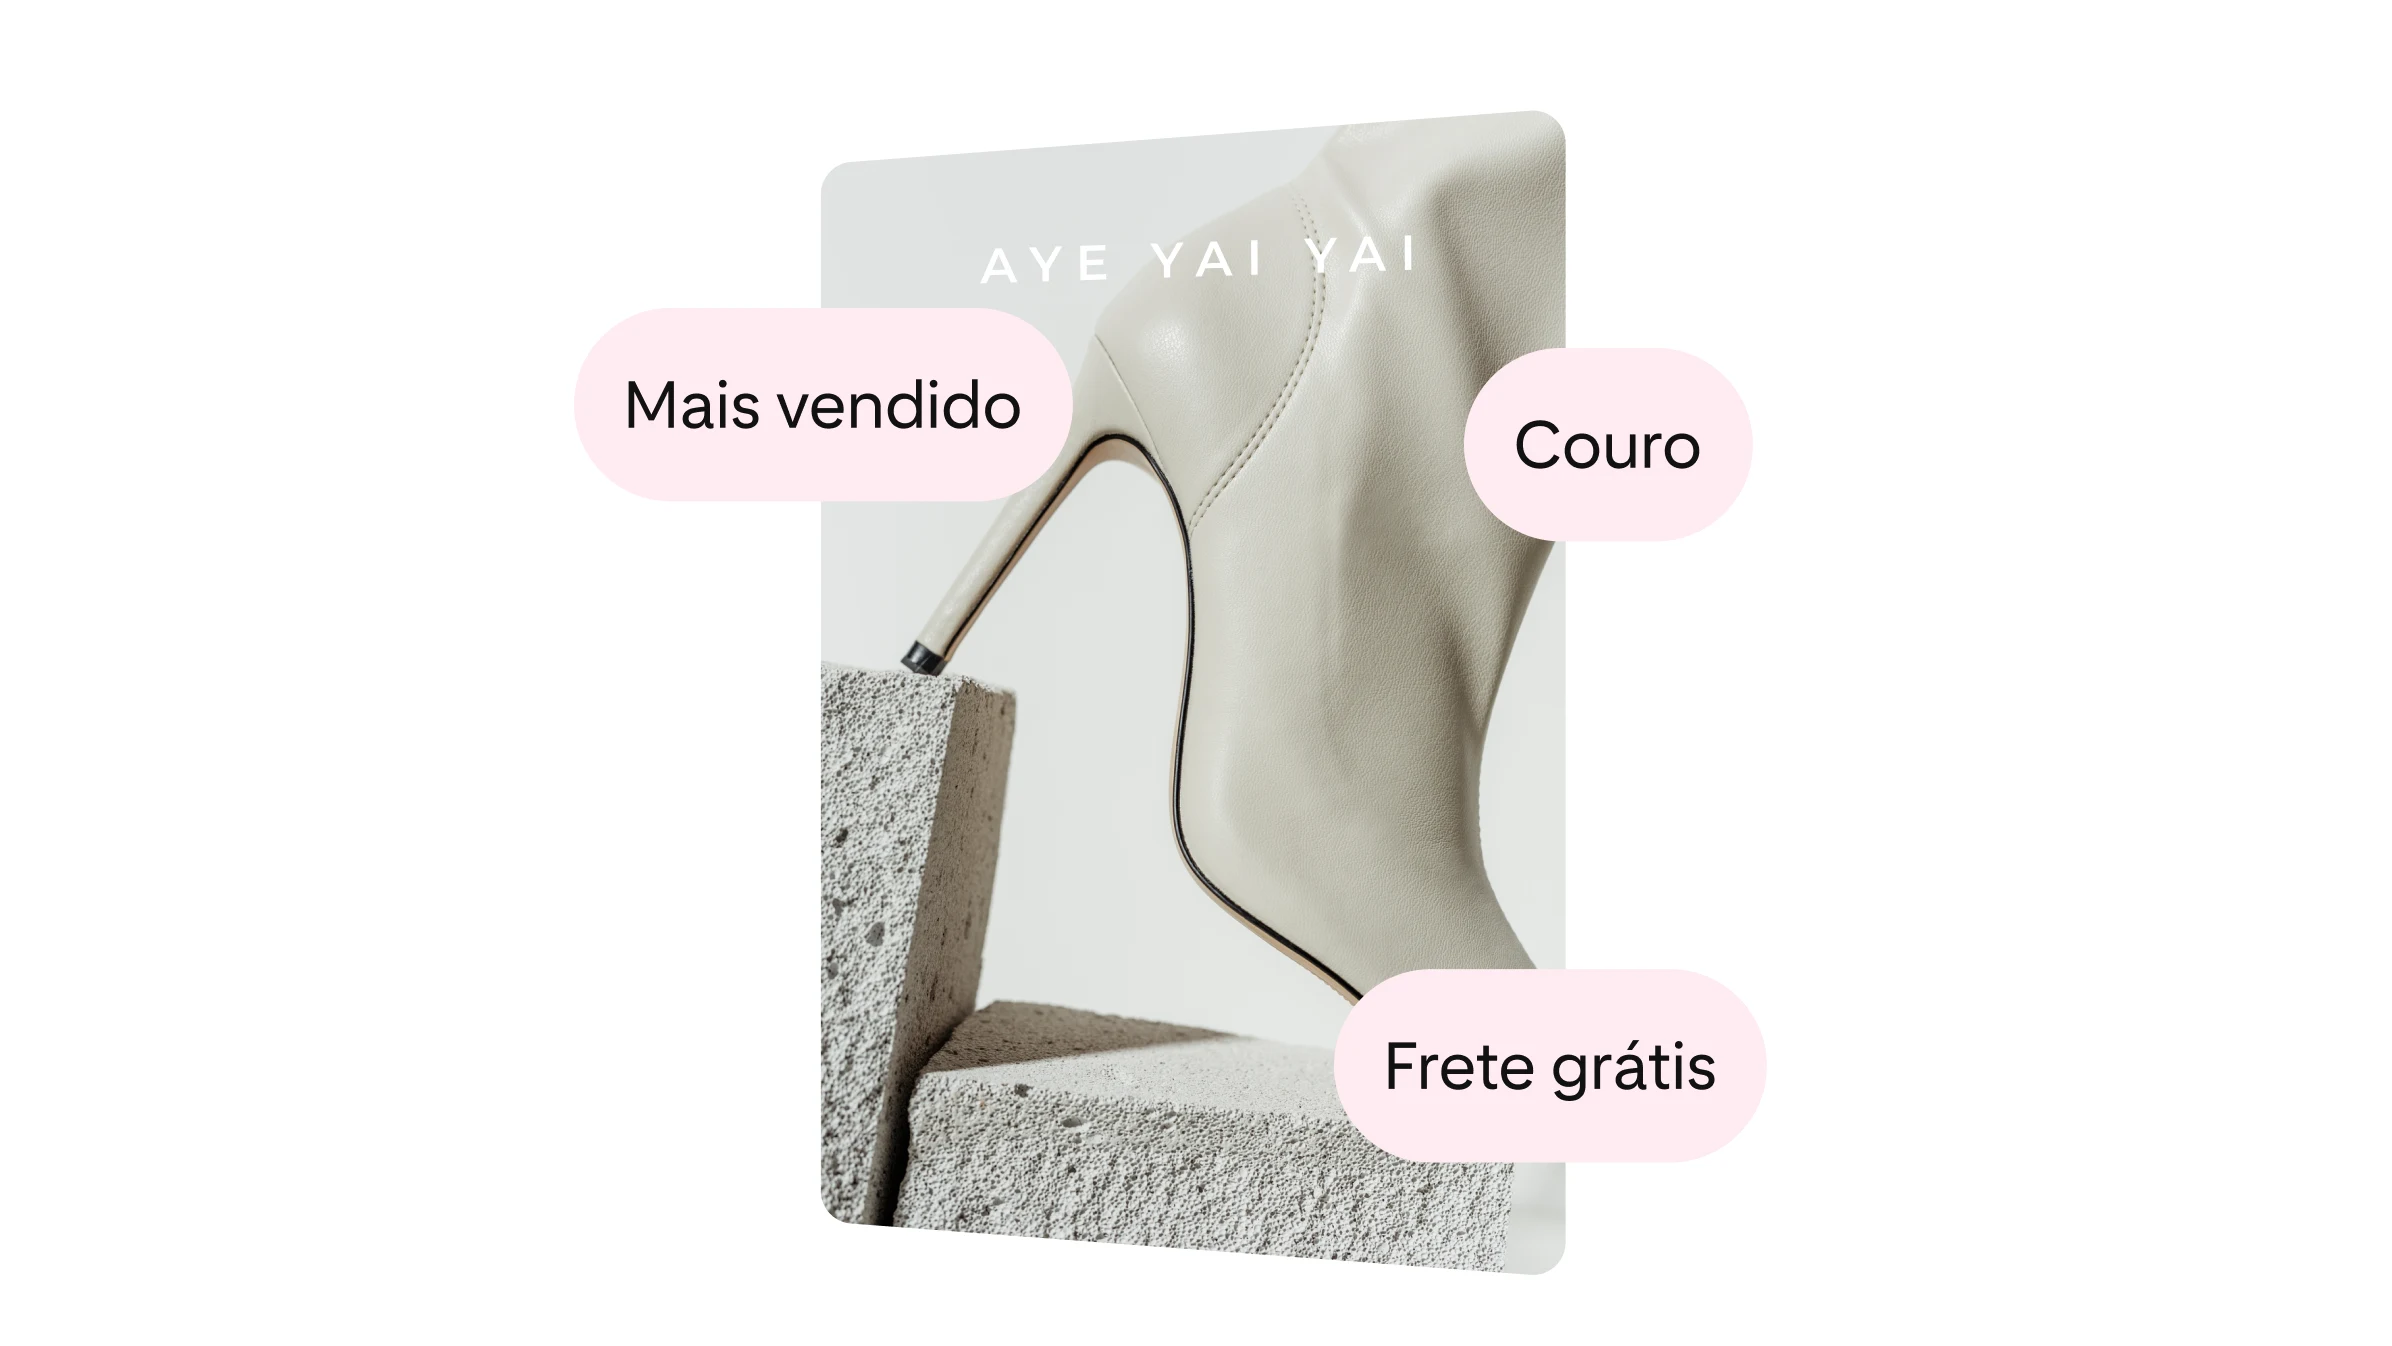 AYE YAI YAI promove suas botas brancas de couro. Um texto indica que o produto está entre os mais vendidos e que o frete é grátis.